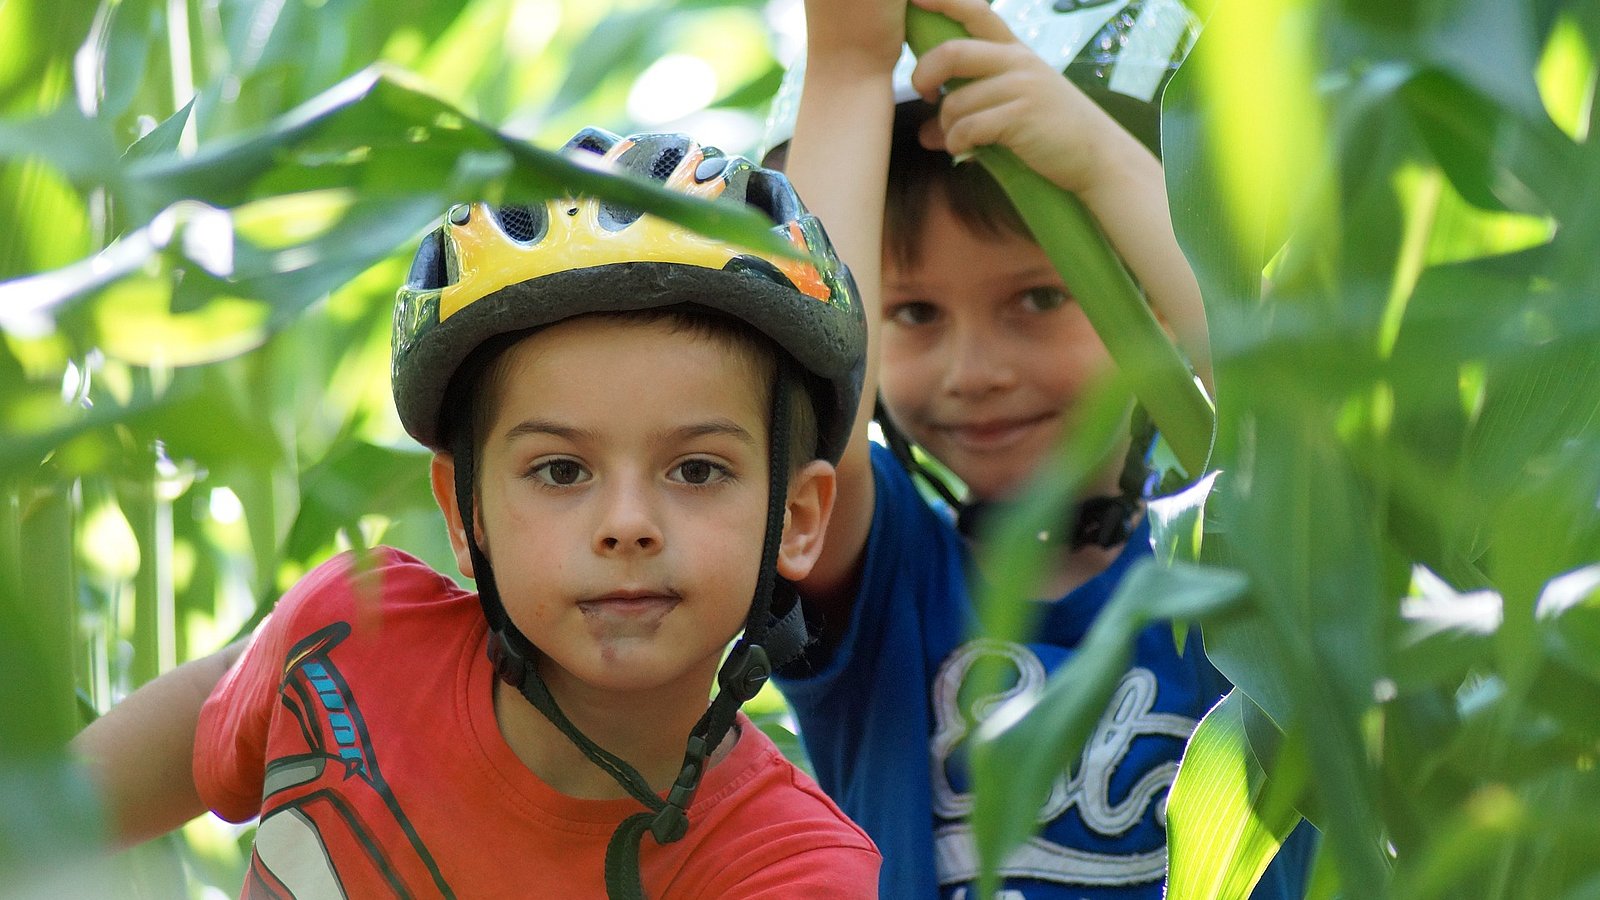 Zwei jüngere Jungen mit Fahrradhelm auf dem Kopf haben sich in einem Maisfeld versteckt und schauen durch die Stauden. 